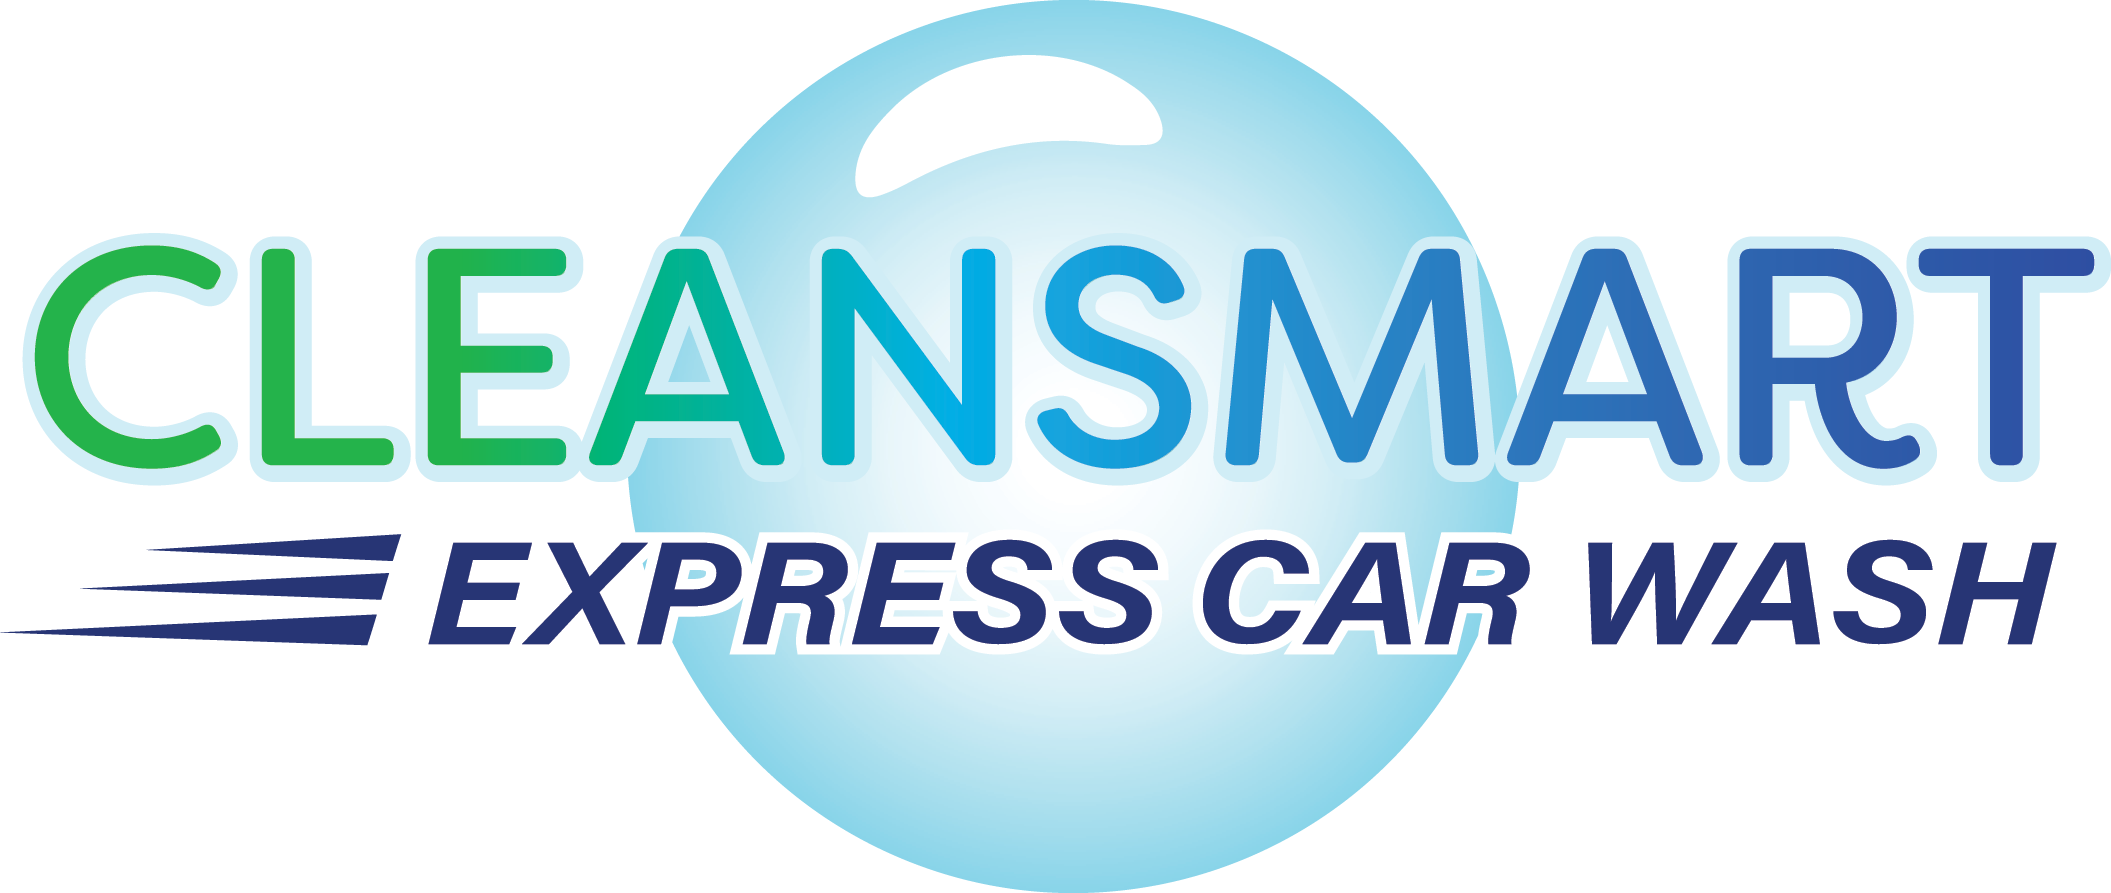 Cleansmart Express Car Wash